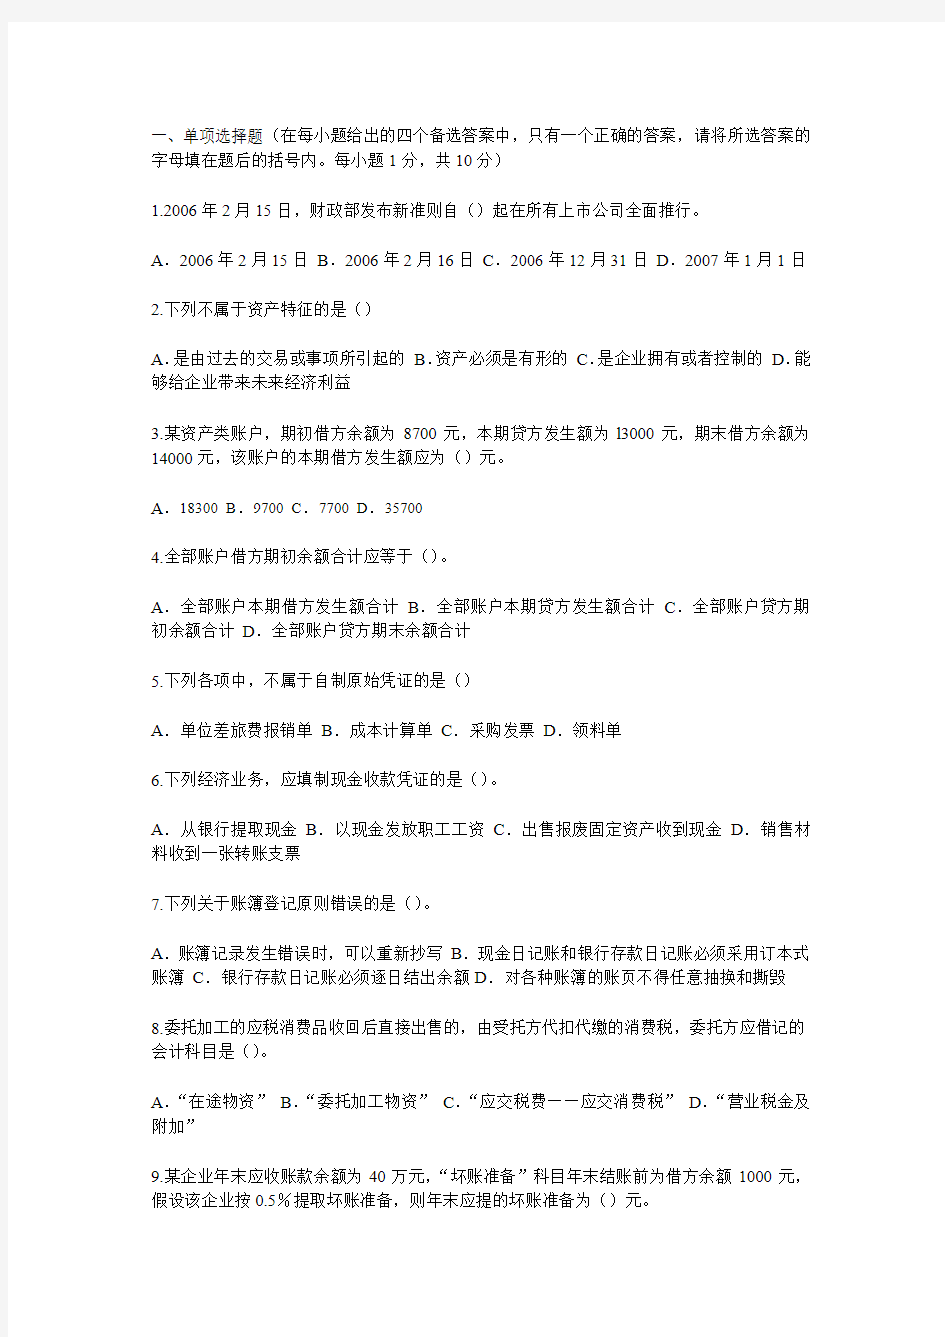 2010年《会计基础》模拟试题(含全部答案)_天津财税信息网